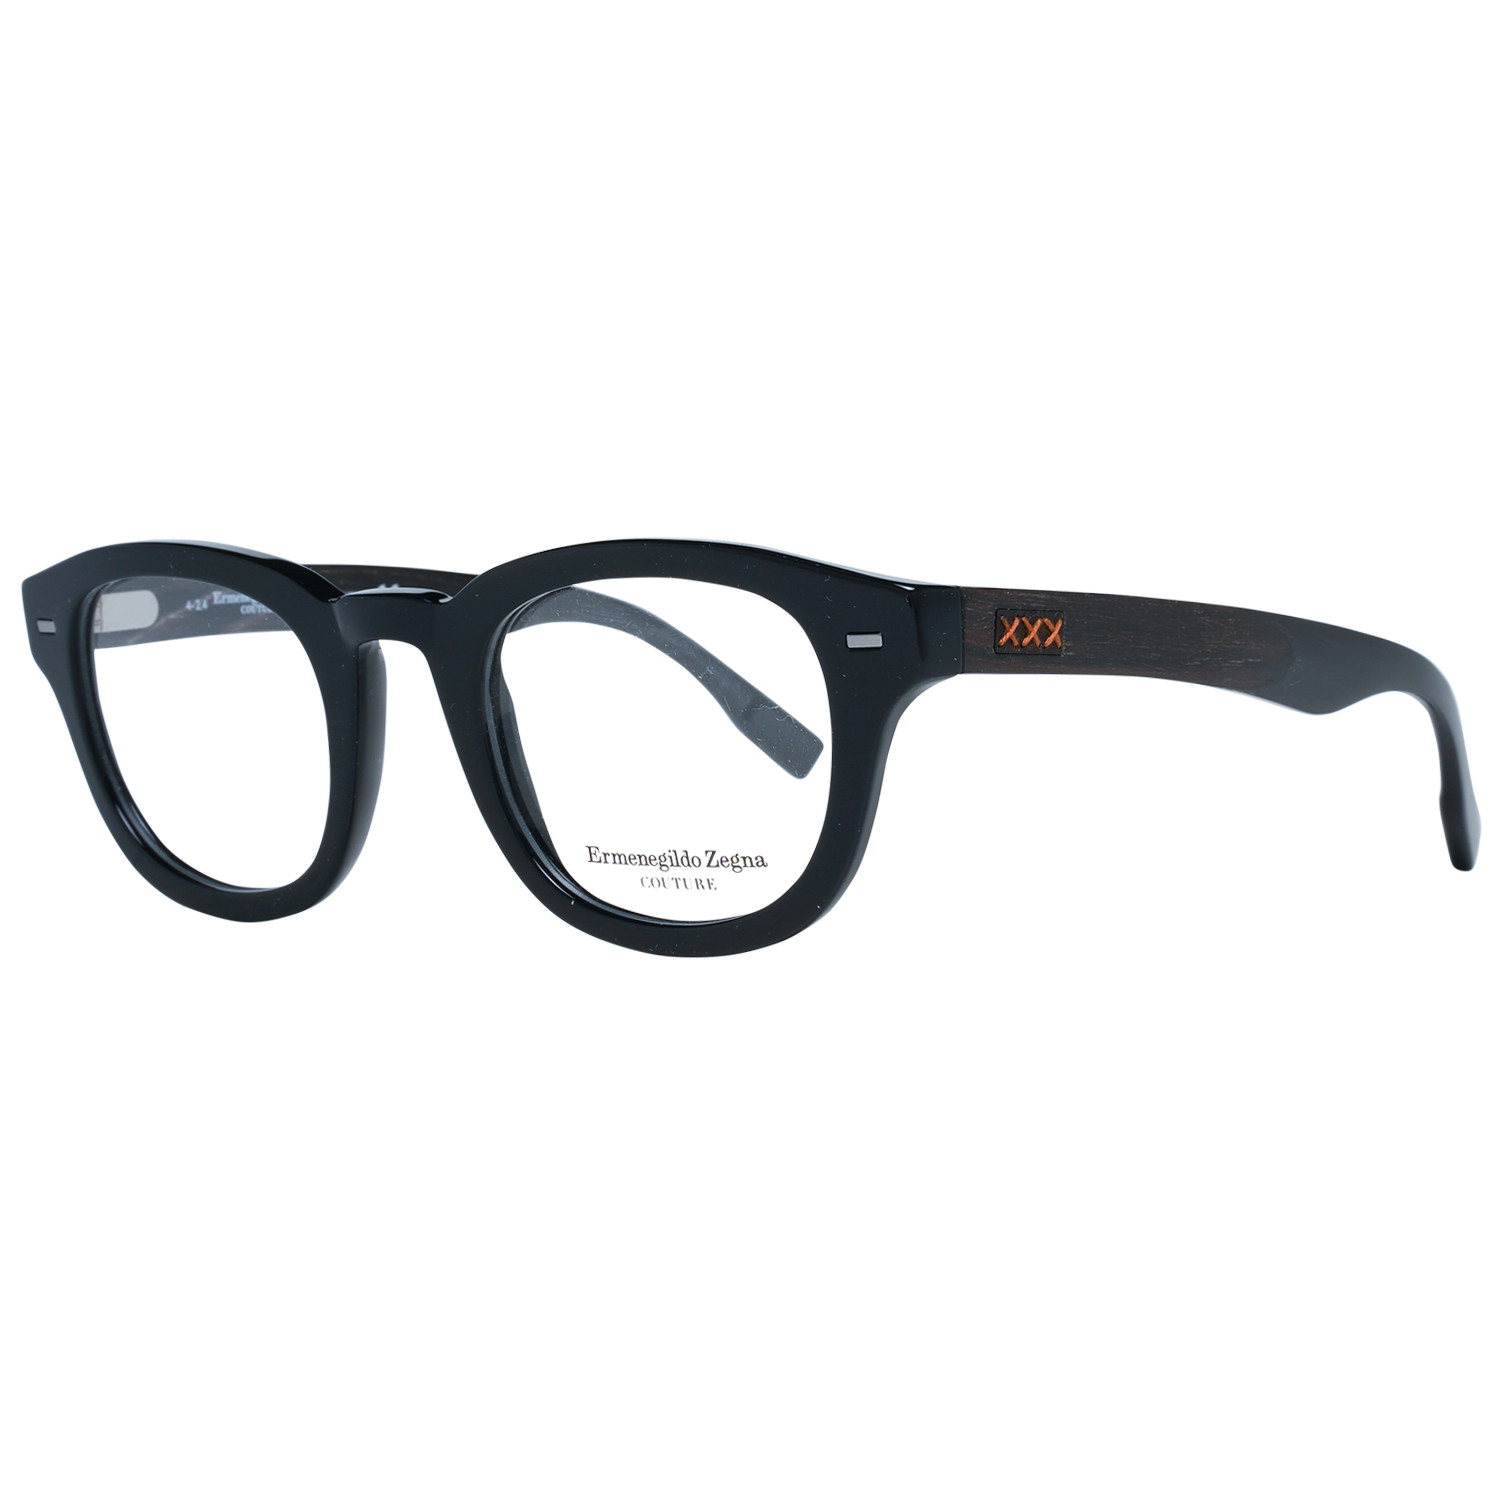 Zegna Couture ZC 5005 001 47 occhiali da vista